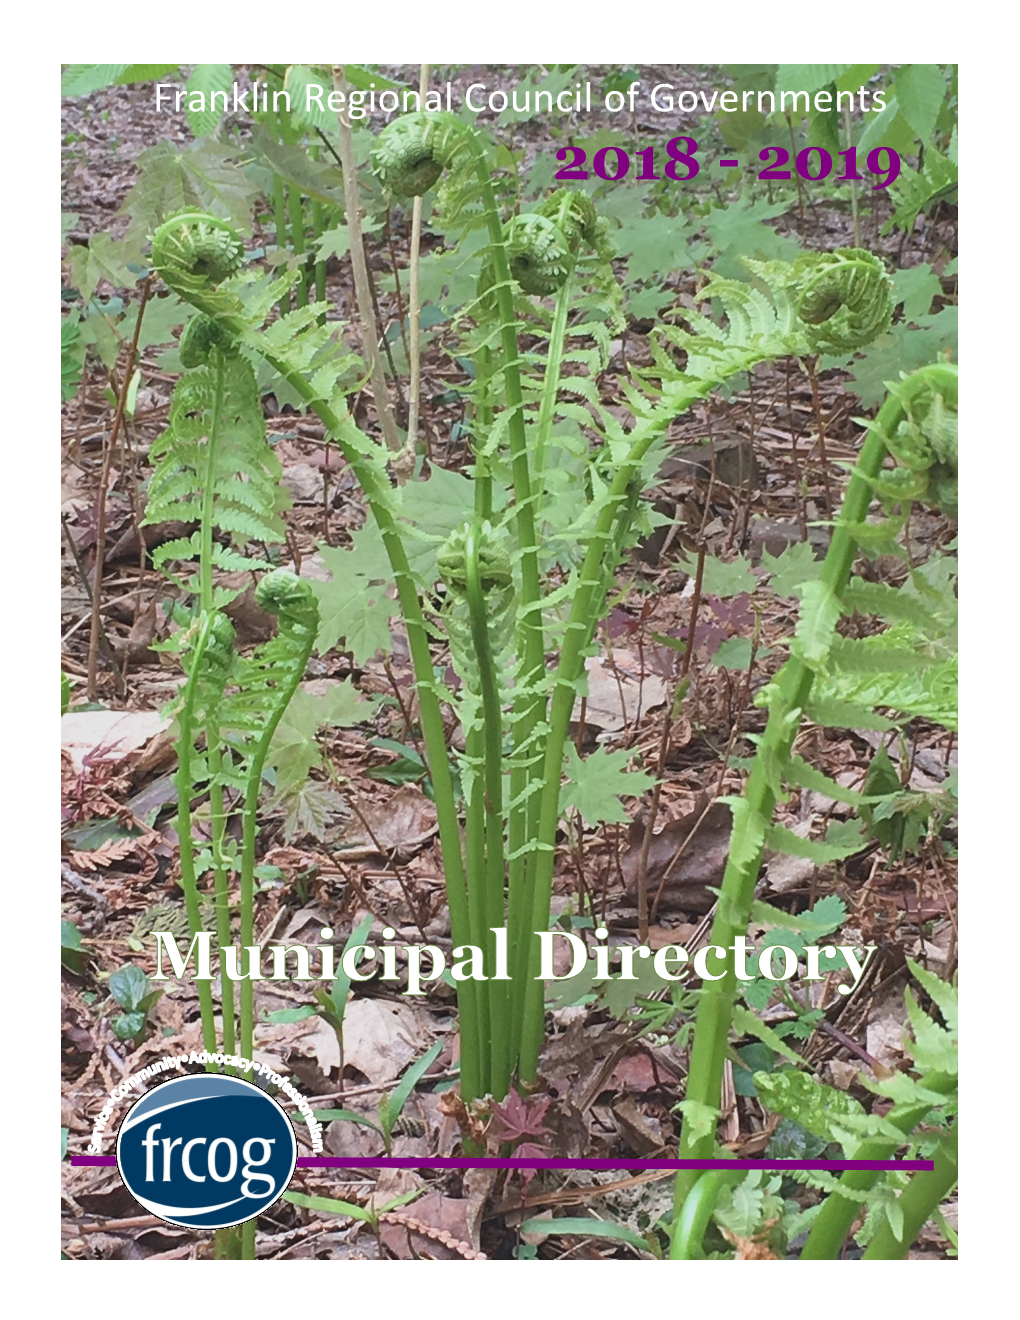 FRCOG 2018-2019 Municipal Directory